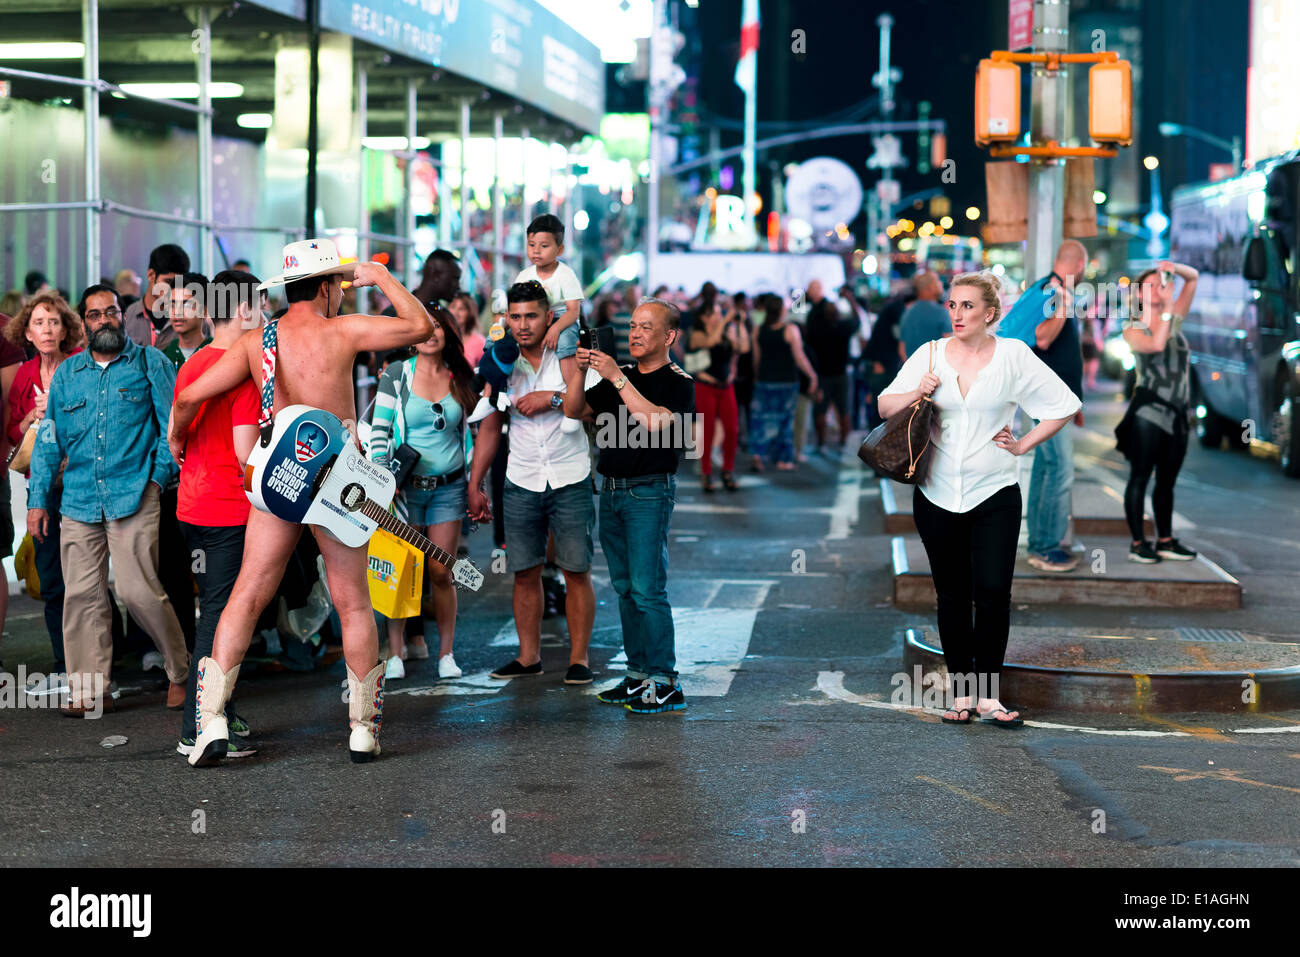 NEW YORK - 26 MAI 2014 : Les gens de prendre des photos d'une des connexions Cowboys sur Times Square. Naked Cowboy est devenu une marque et franchise. Prises à New York, 26 mai 2014 Banque D'Images